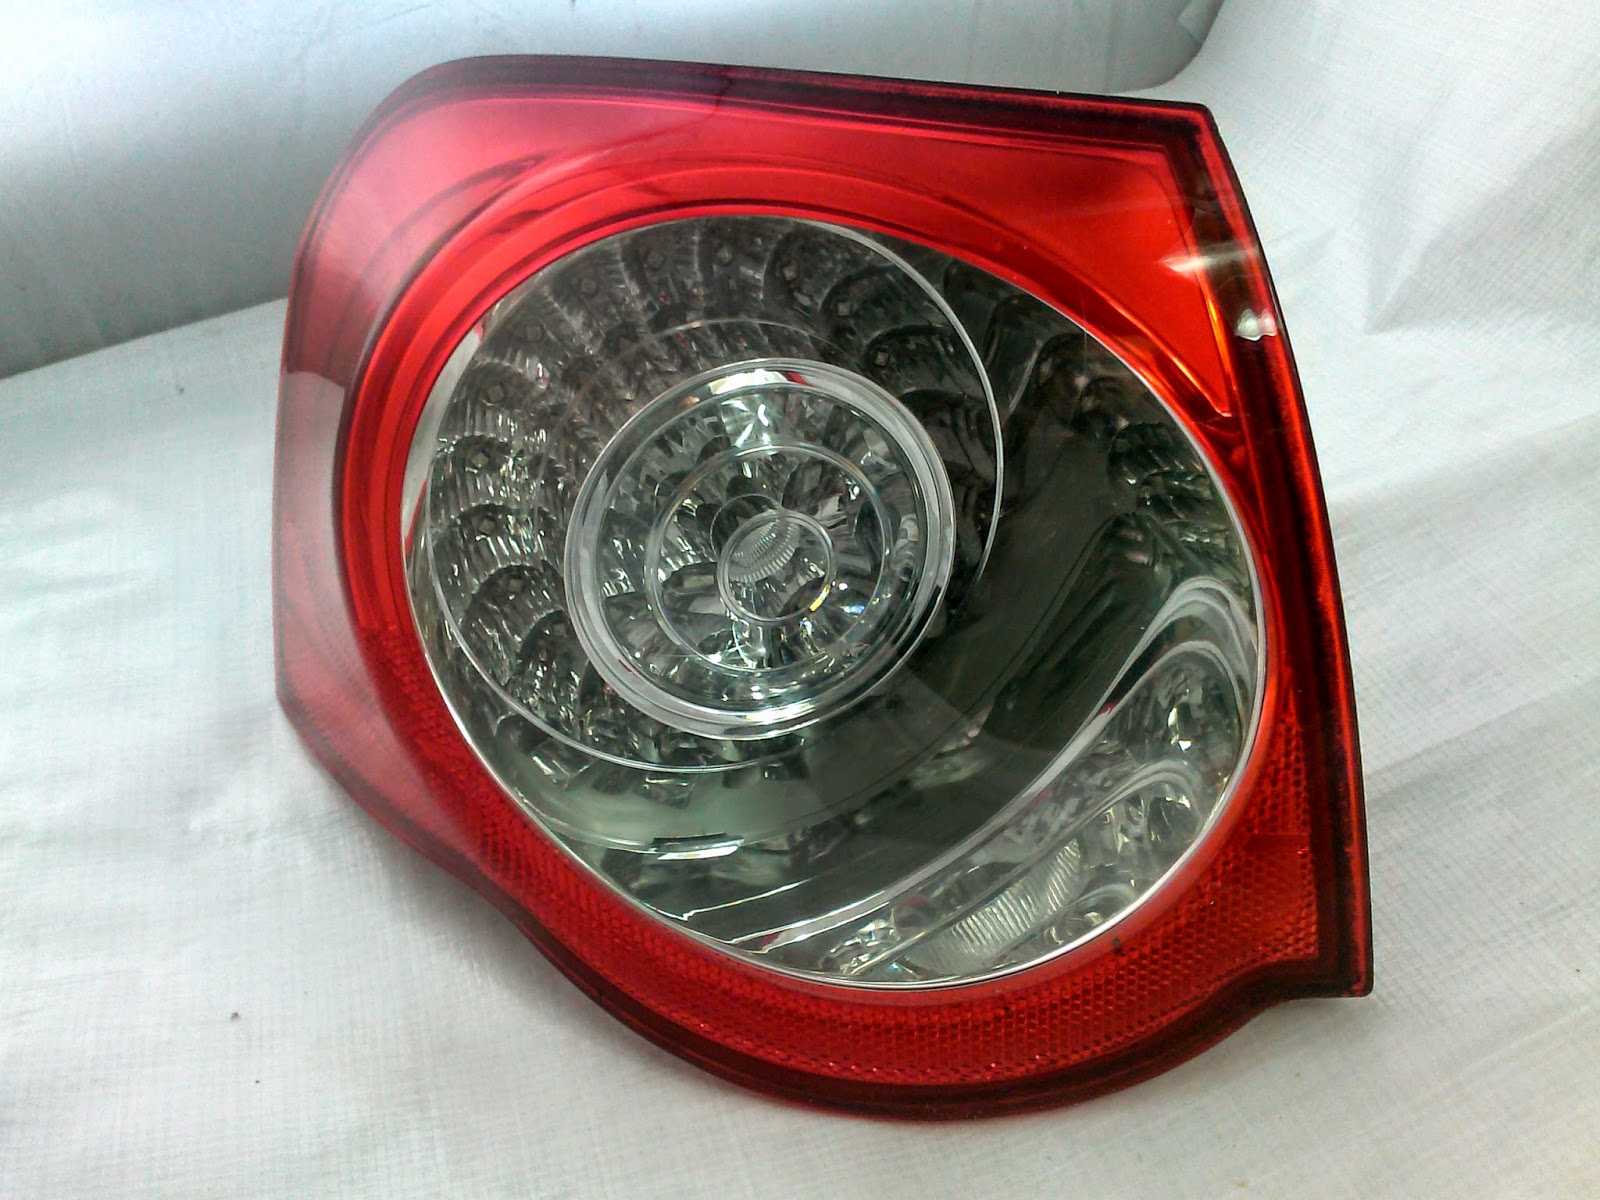 Naprawa świateł samochodowych VW Passat B6 lampy tył